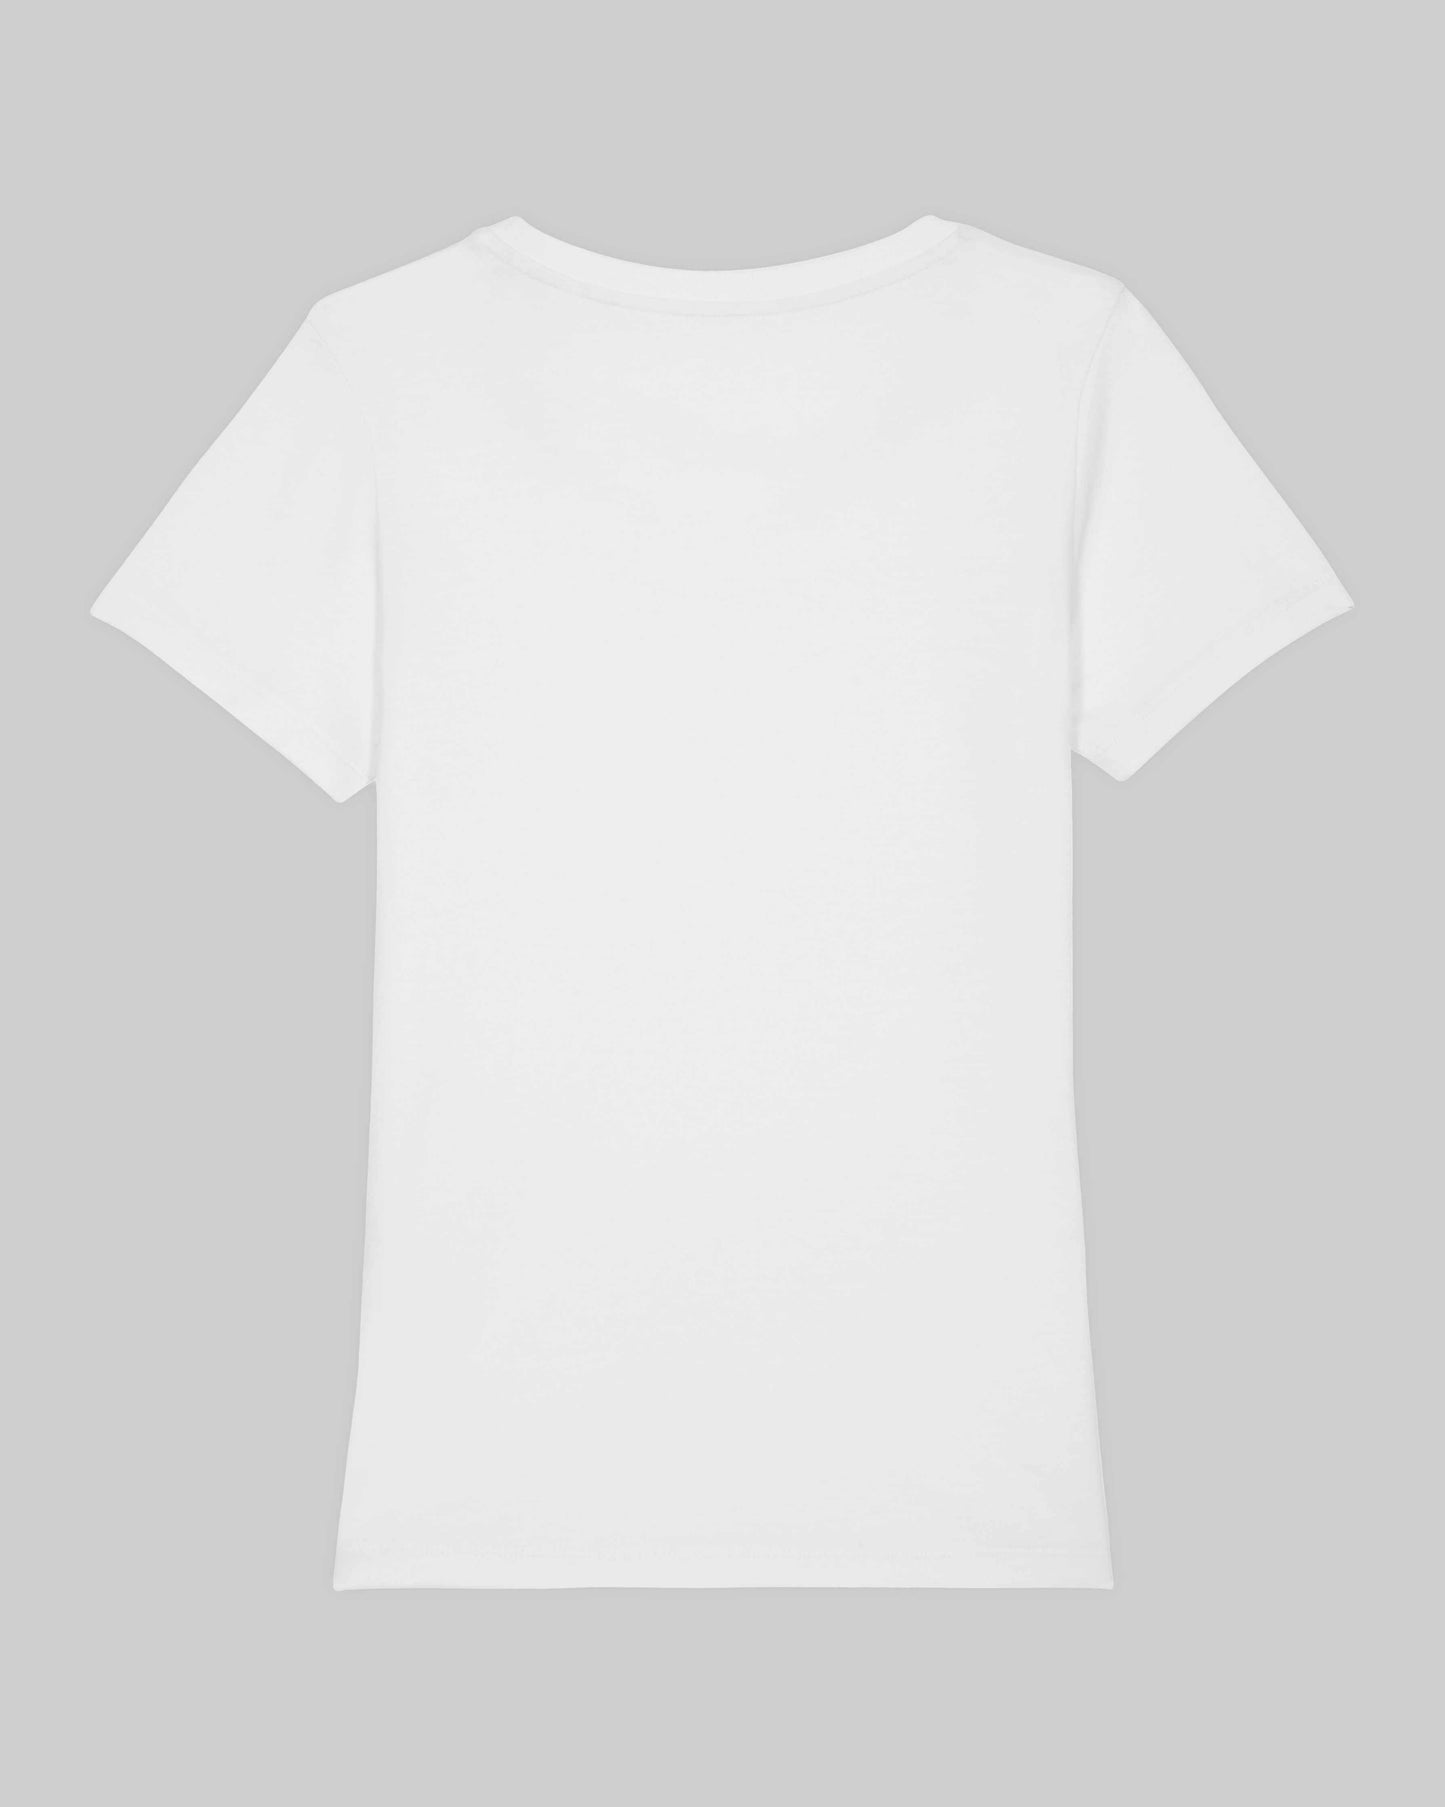 EINHORST® Organic Shirt tailliert in "Weiß" mit dem Motiv "pride Regenbogen" in der Kombination schwarzer Regenbogen mit bunter Schrift, Bild von Shirt von hinten